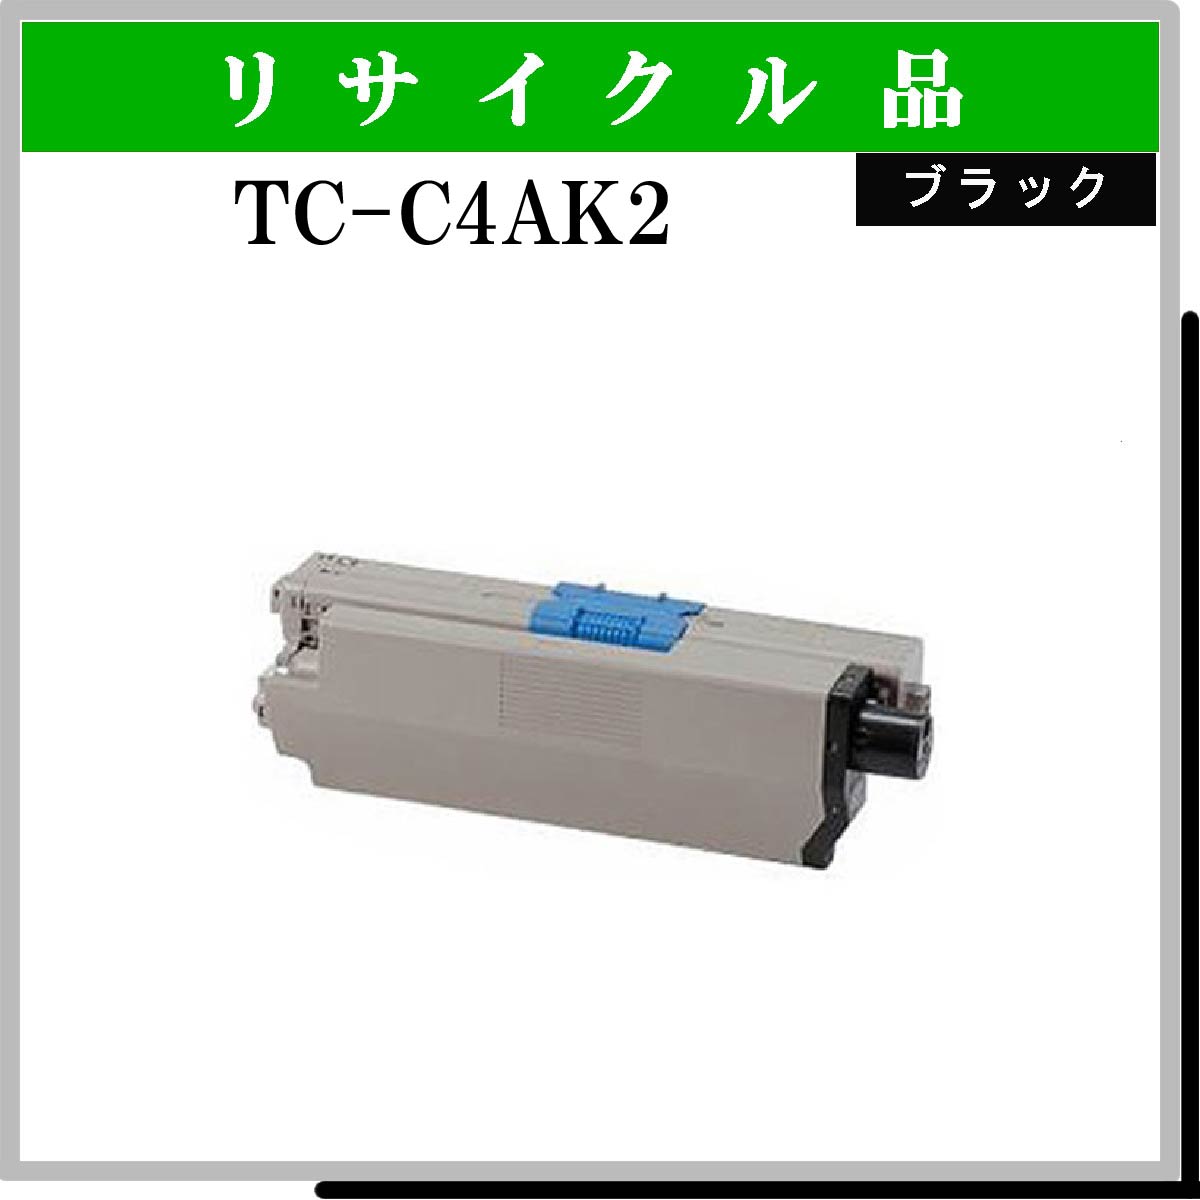 TC-C4AK2